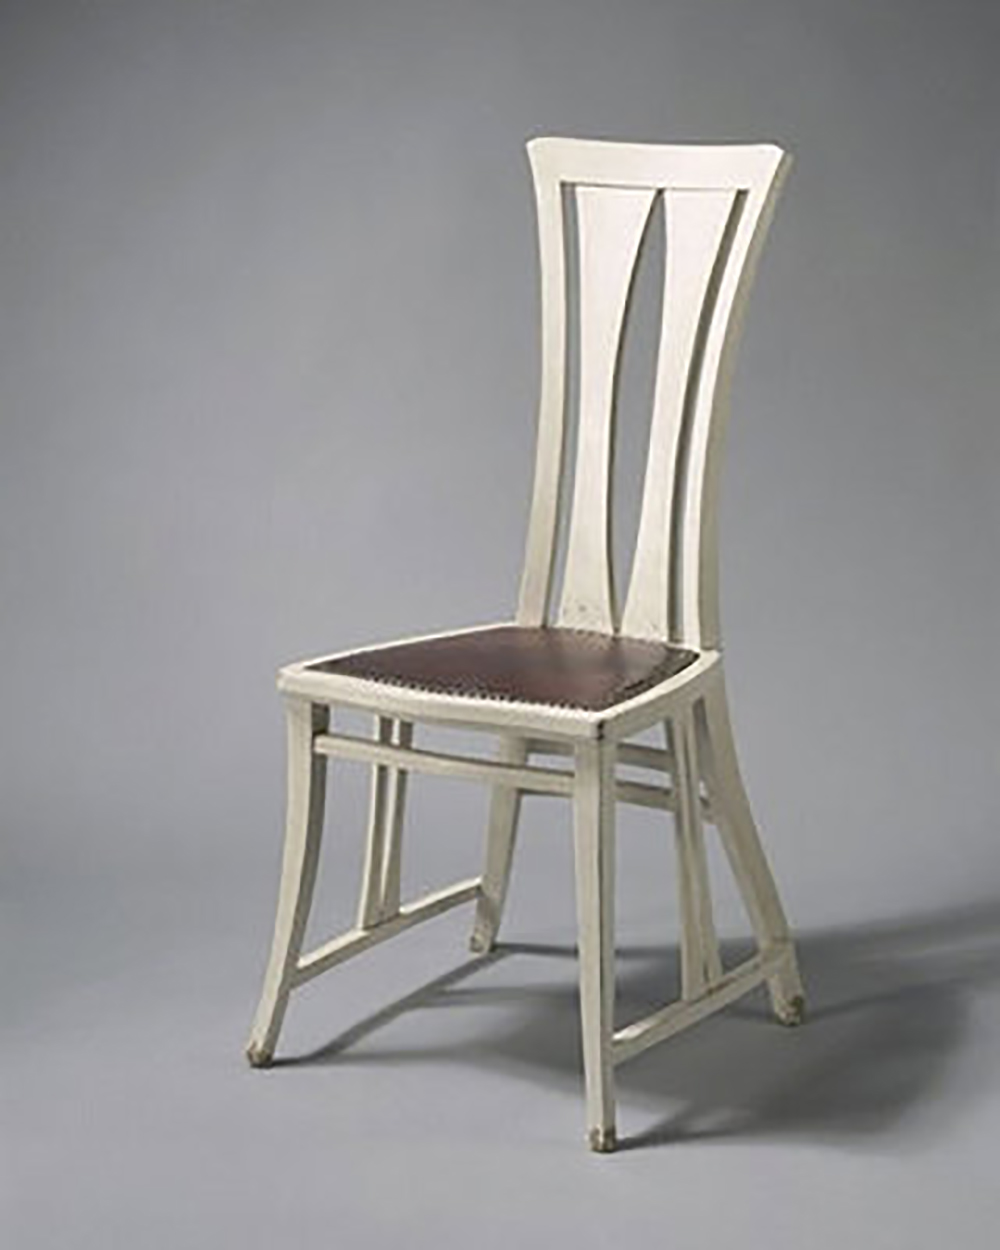 魏森霍夫椅谁设计的图片